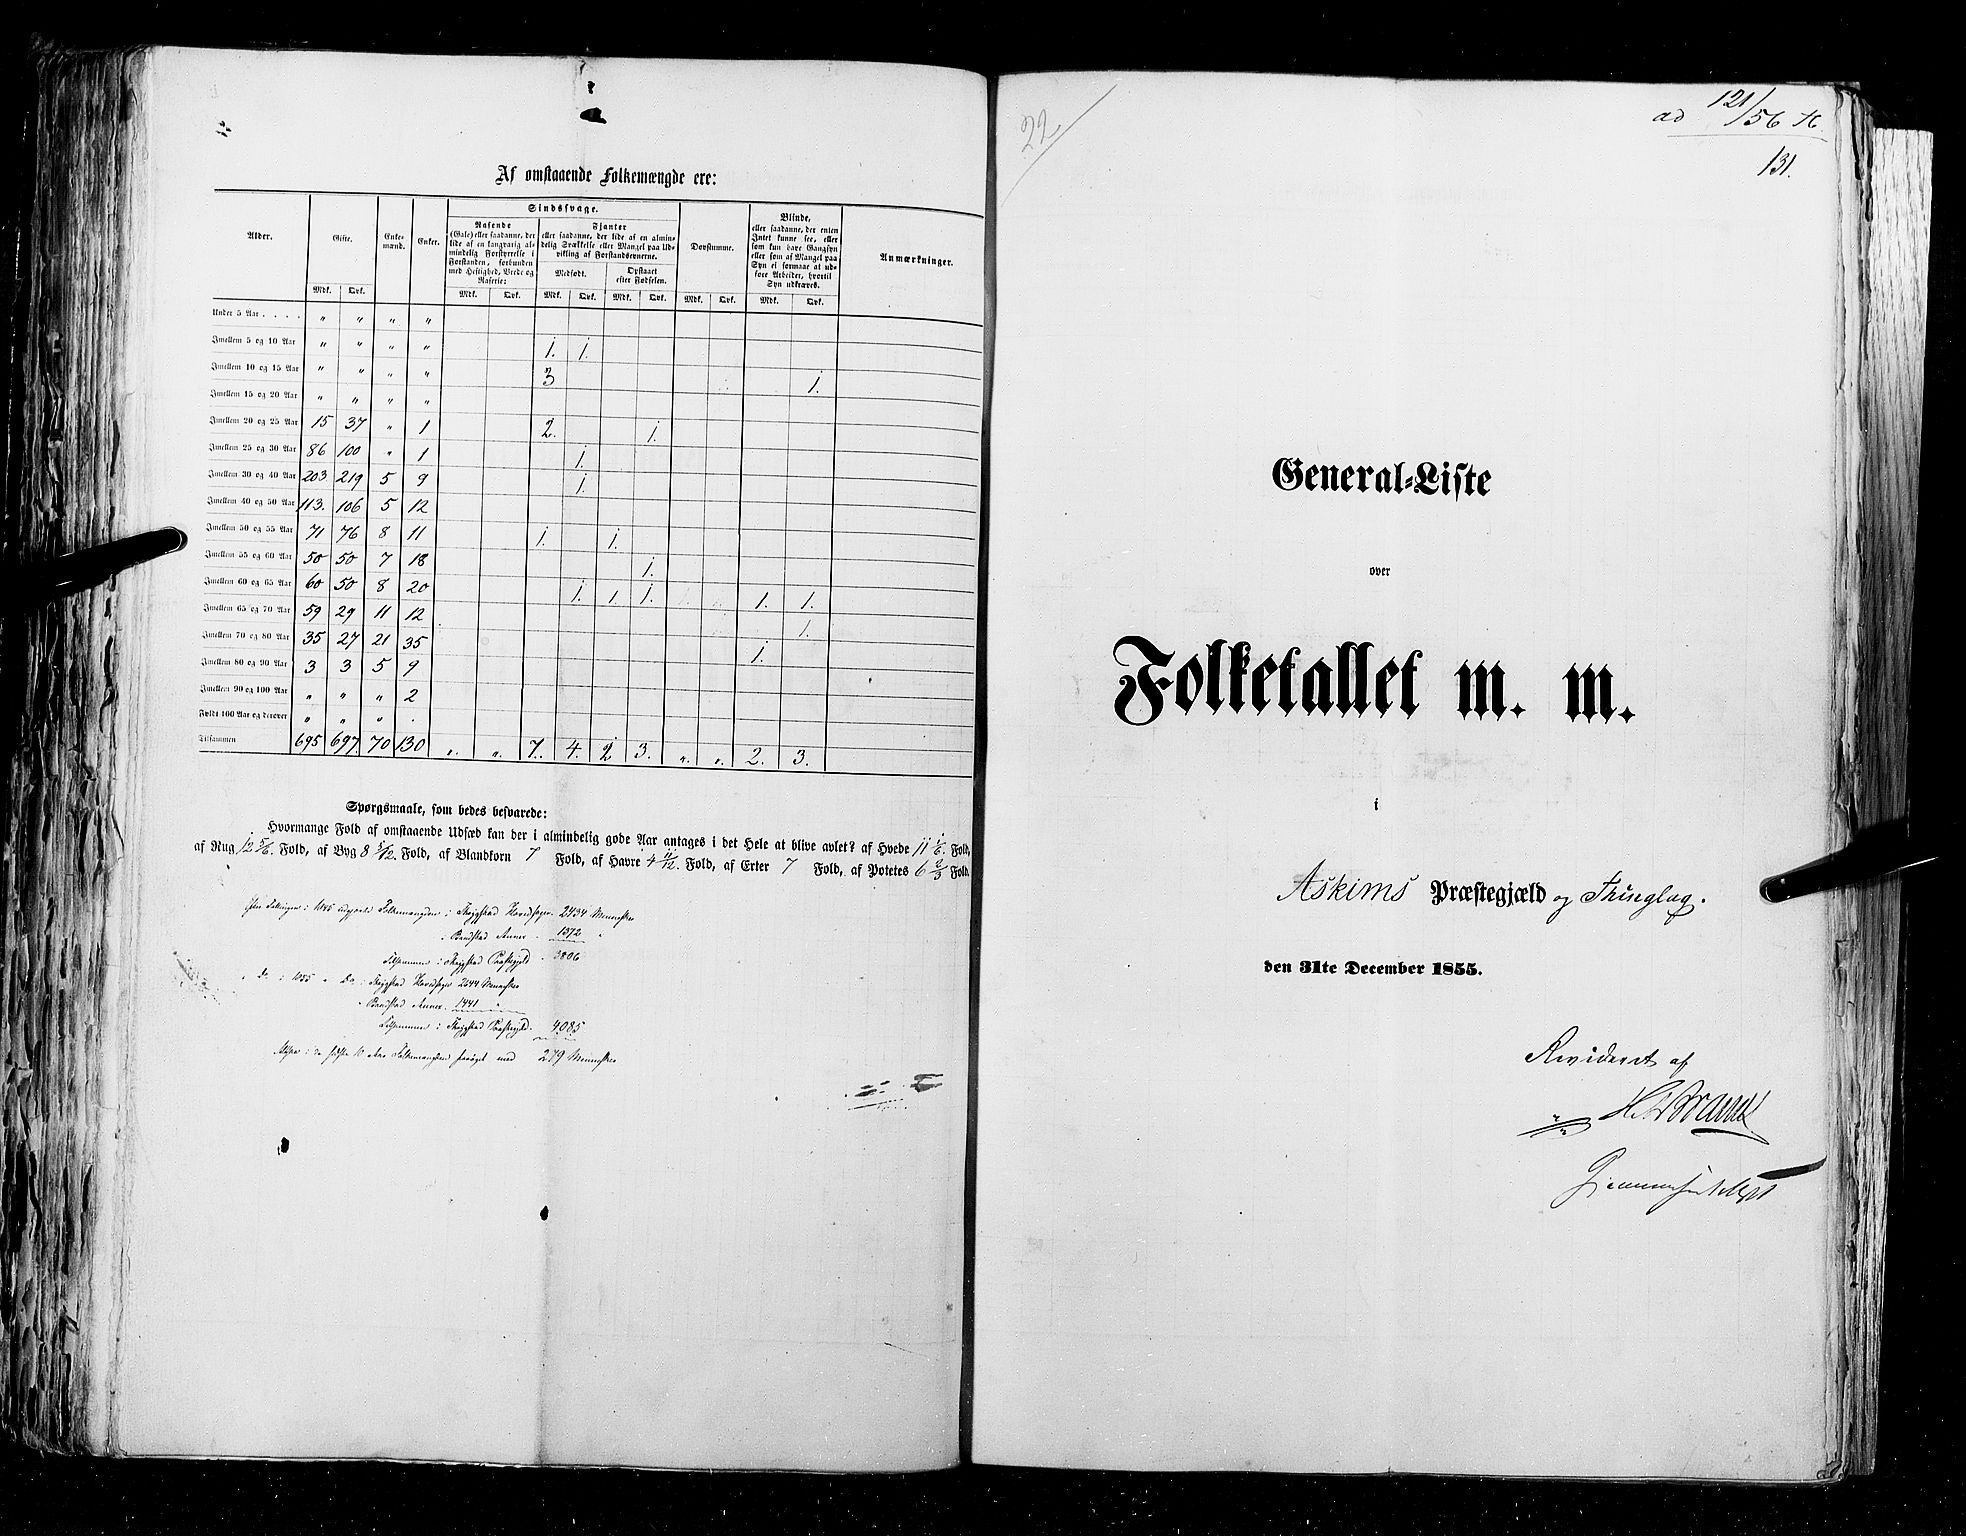 RA, Census 1855, vol. 1: Akershus amt, Smålenenes amt og Hedemarken amt, 1855, p. 131